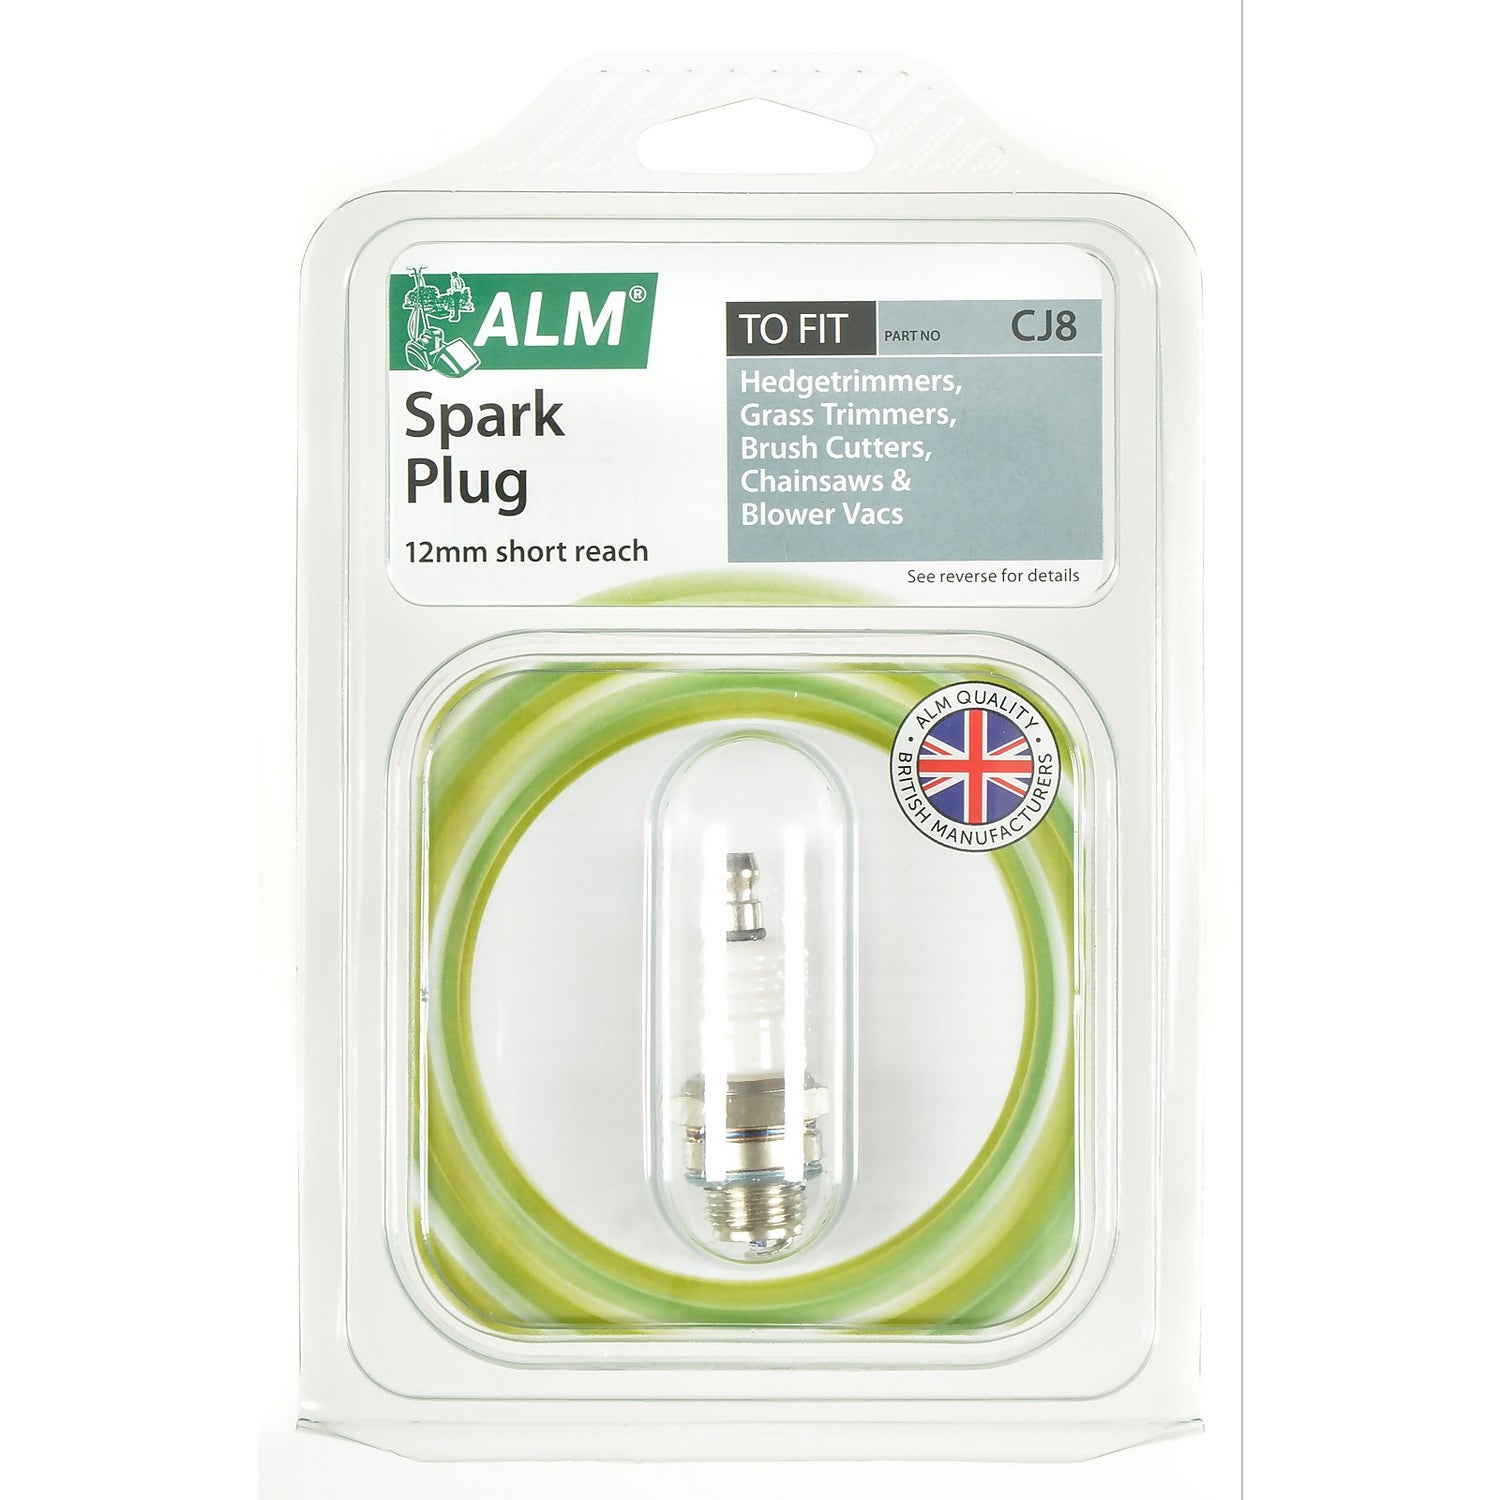 ALM Spark Plug 12mm plug